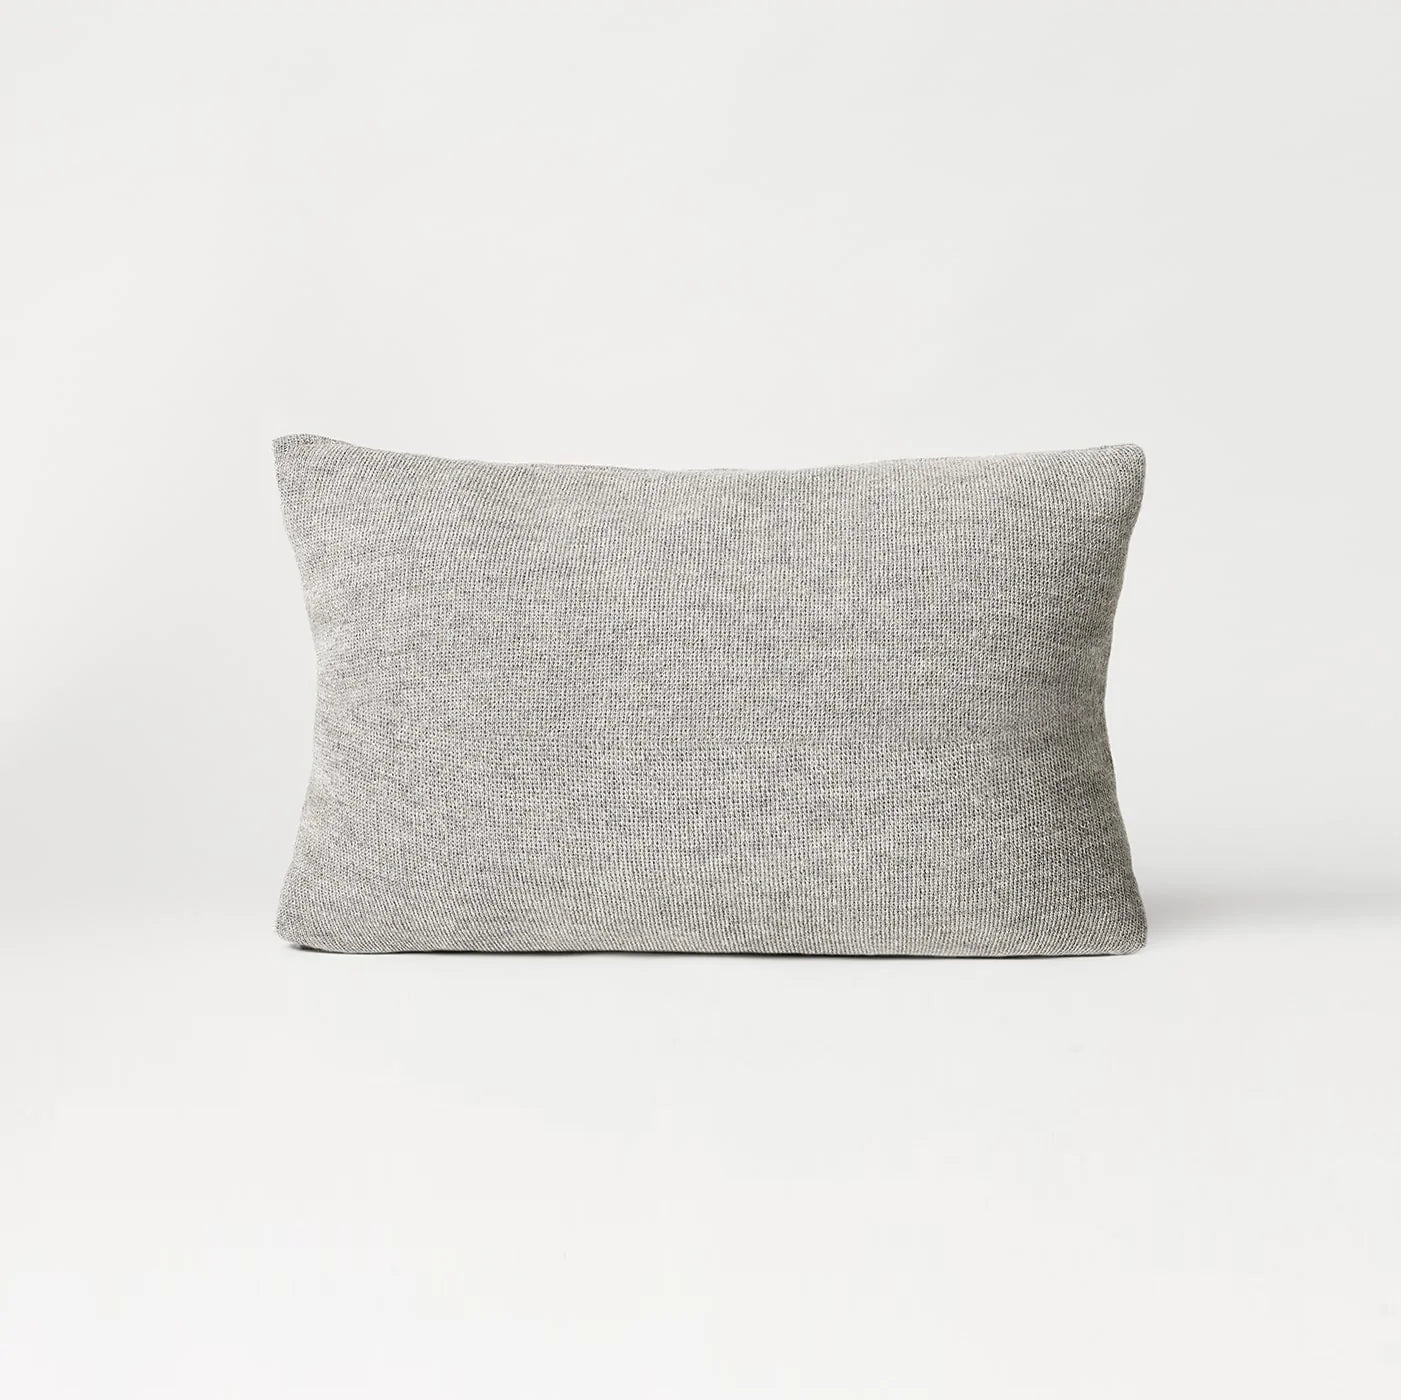 https://gestalt-haus.com/cdn/shop/products/aymara-long-cushions-gestalt-haus-359338.webp?v=1670779497